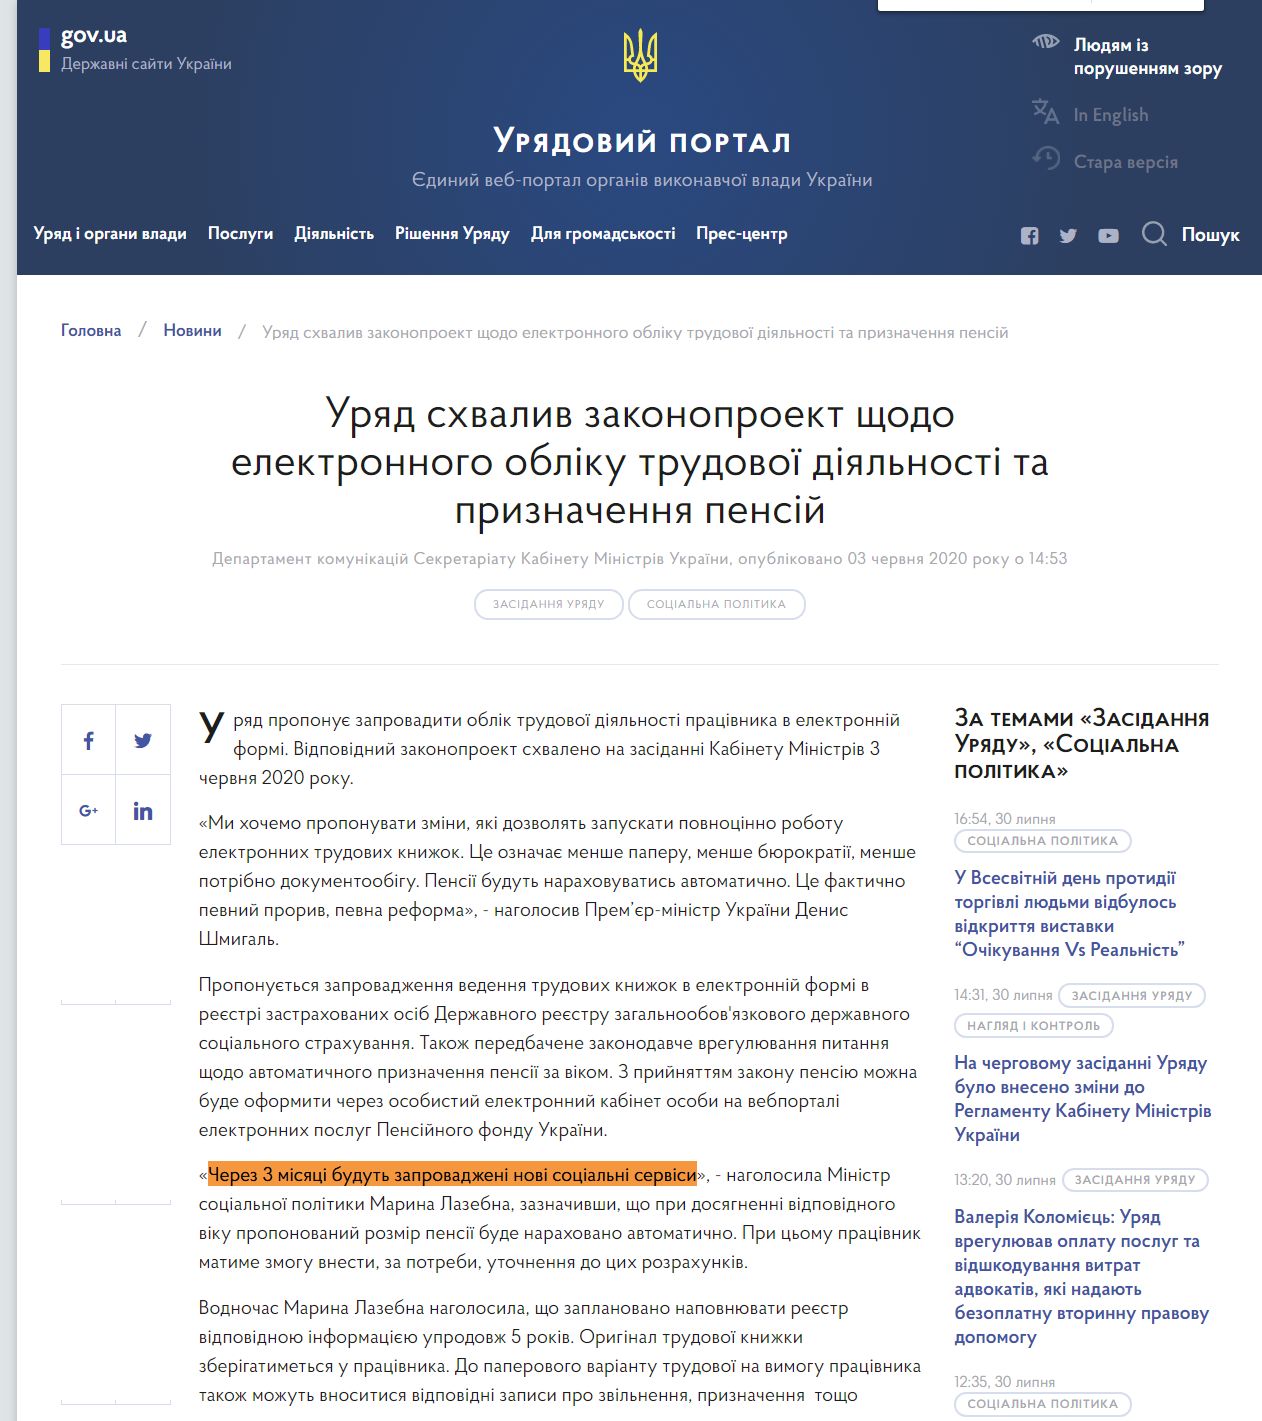 https://www.kmu.gov.ua/news/uryad-shvaliv-zakonoproekt-shchodo-elektronnogo-obliku-trudovoyi-diyalnosti-ta-priznachennya-pensij